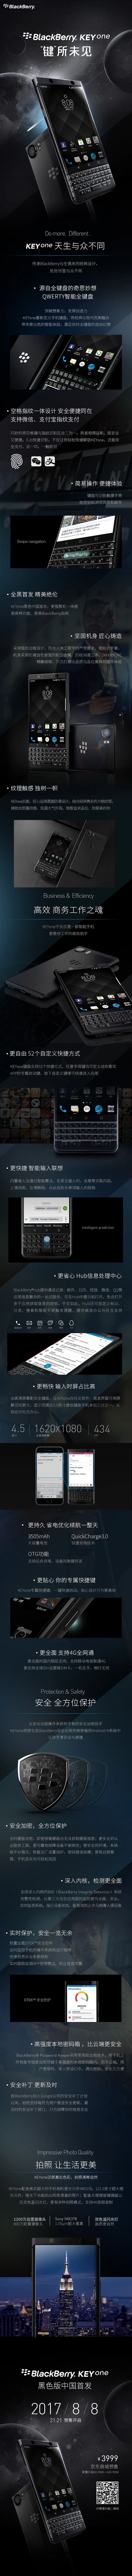 黑莓重回中国，带来全球定价最低的KEYone手机、卖3999元